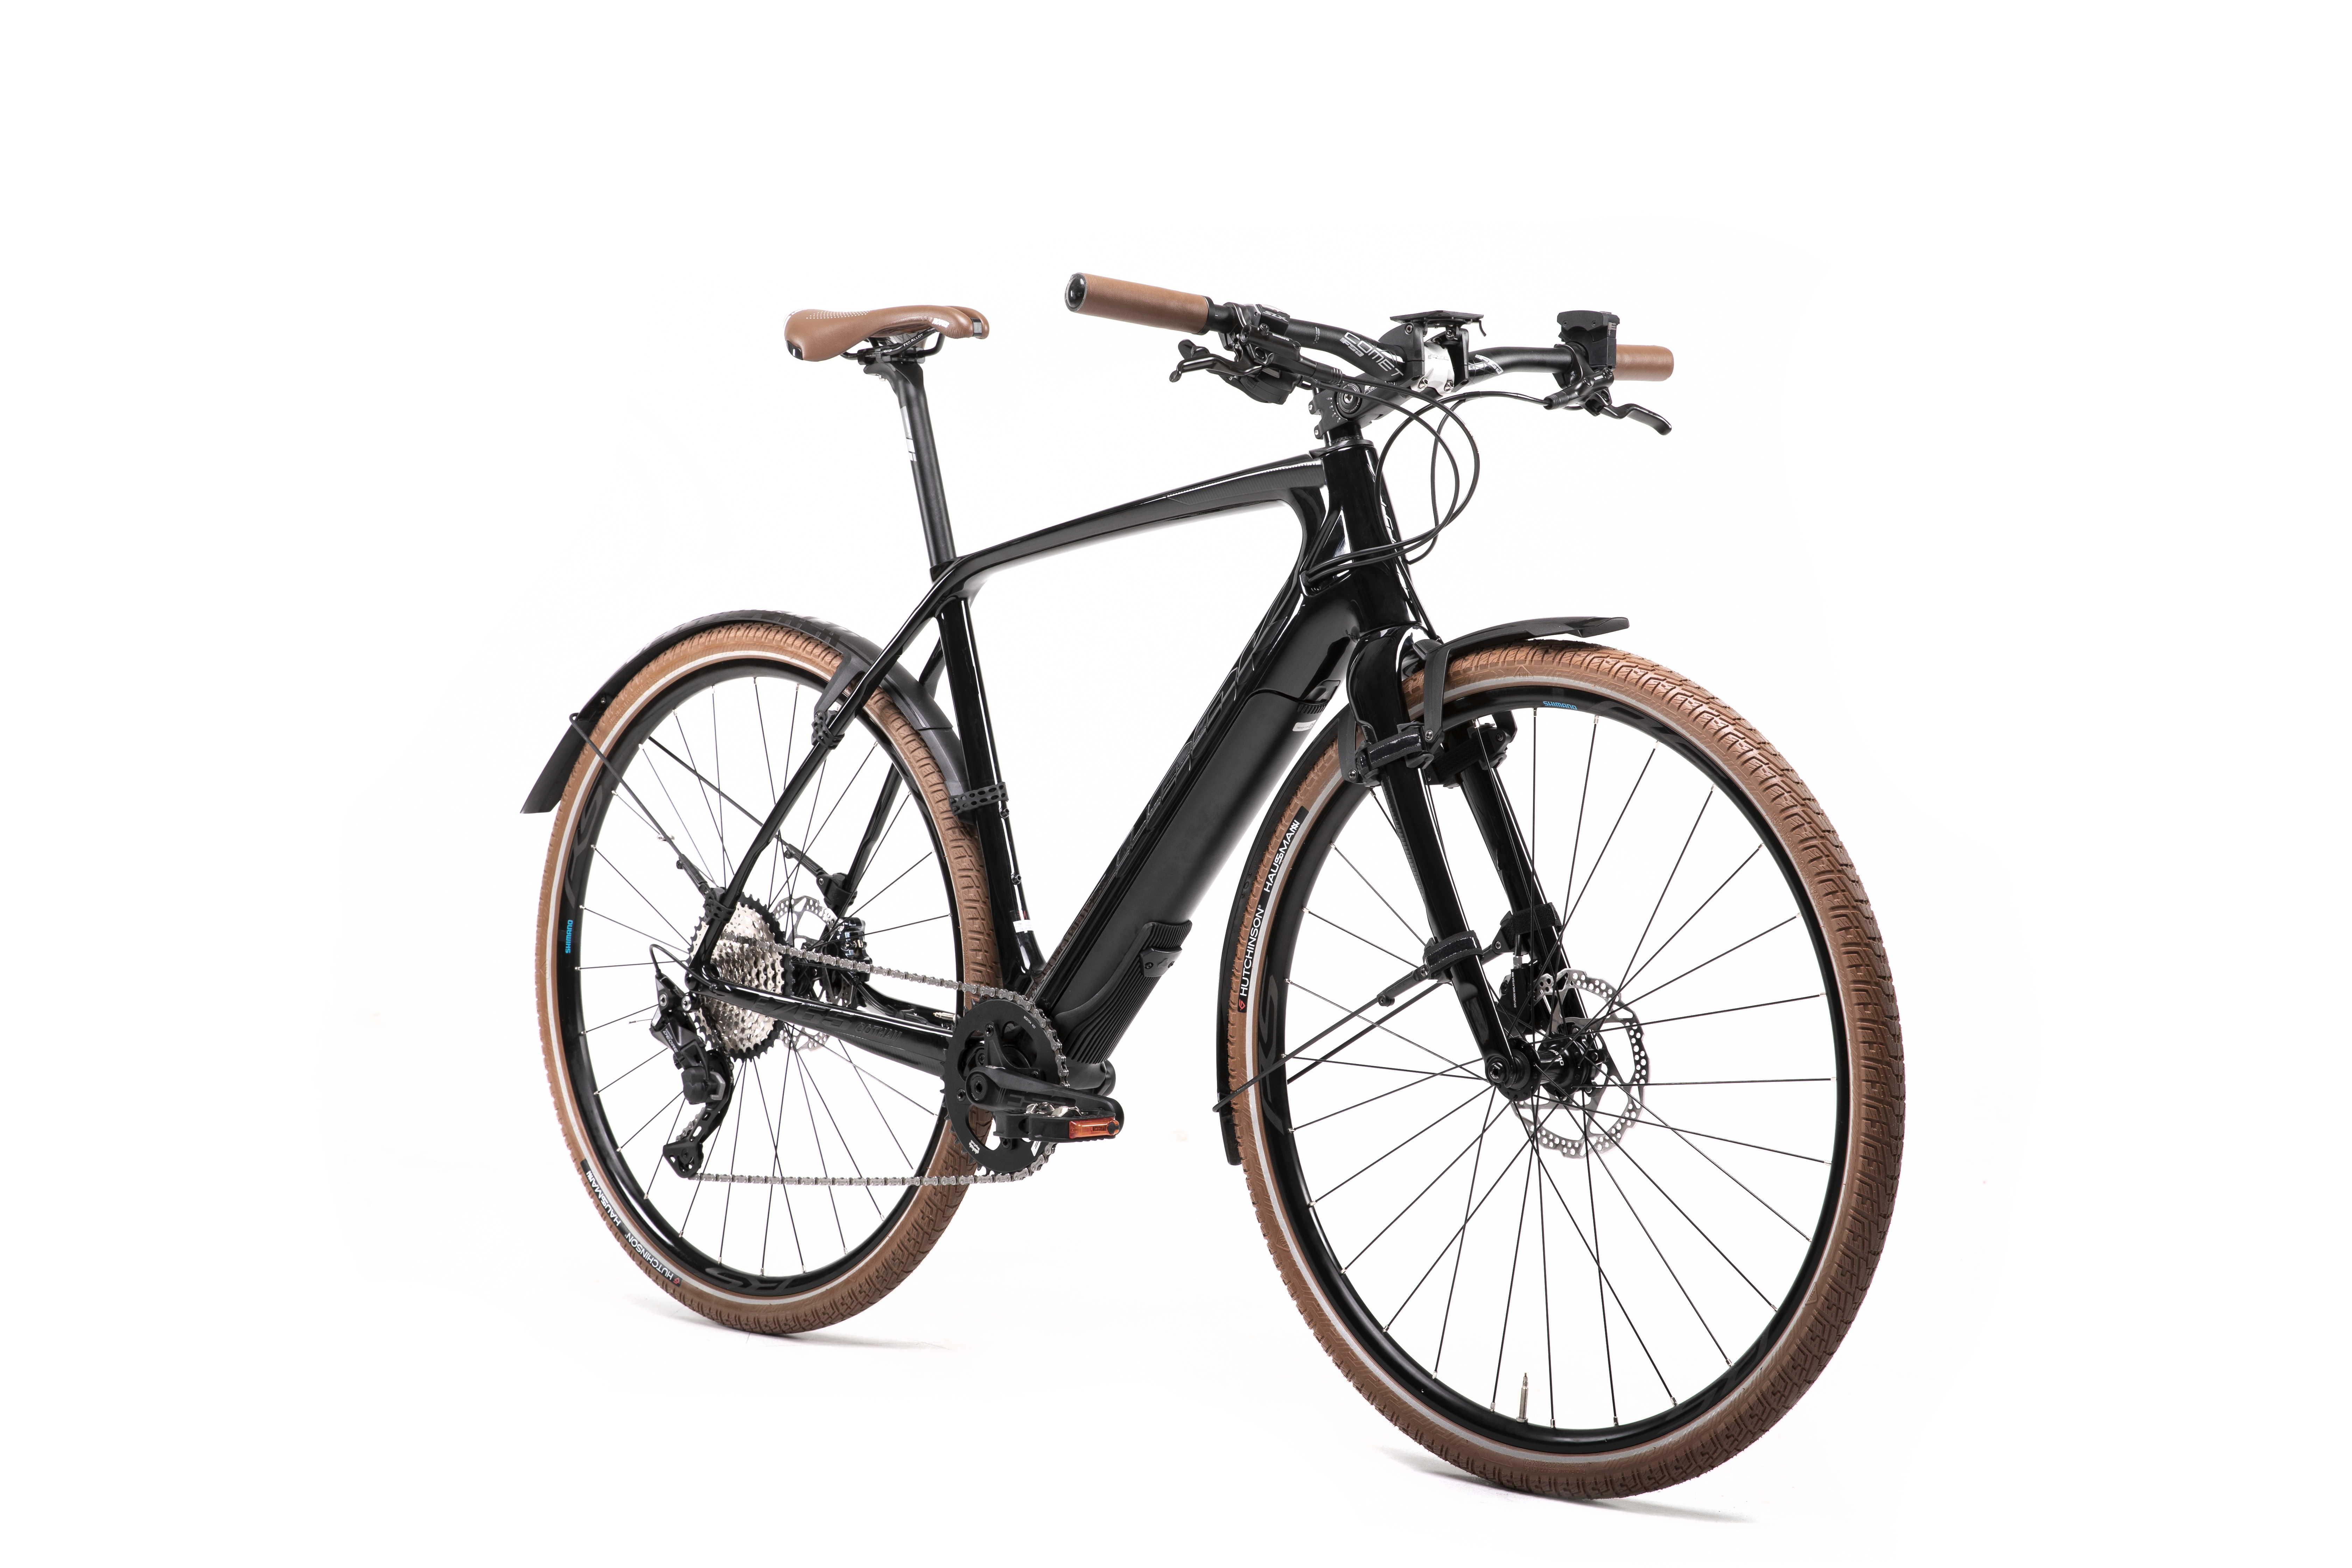 Comparatif vélos électriques : 13 modèles testés par GEO Aventure - GEO